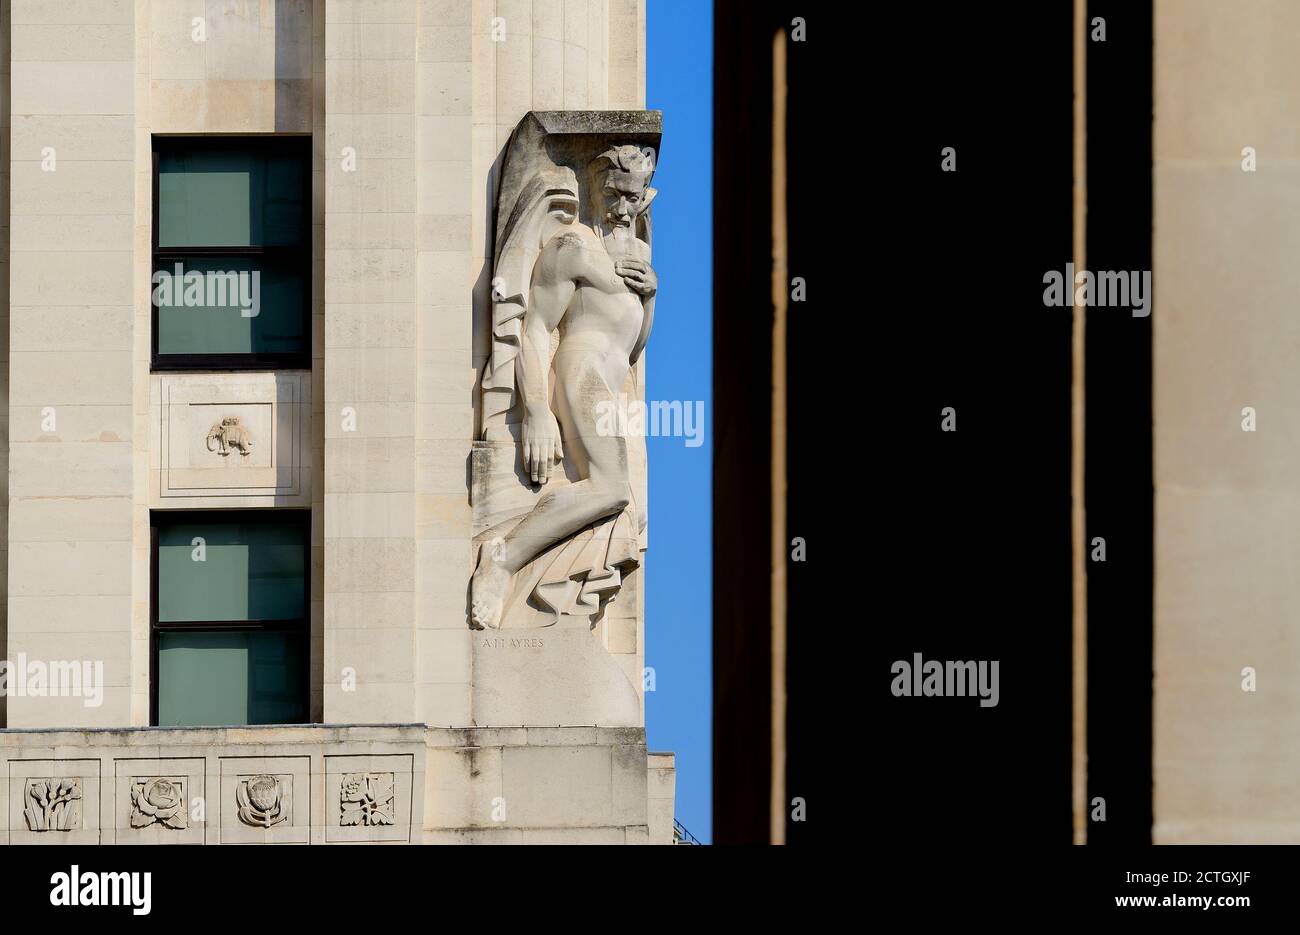 Londres, Inglaterra, Reino Unido. Nuevo edificio Adelphi, Adam Street / Victoria Embankment. Art Deco (1938) piedra de Portland. Estatua alegórica 'contemplación' (por UN Foto de stock